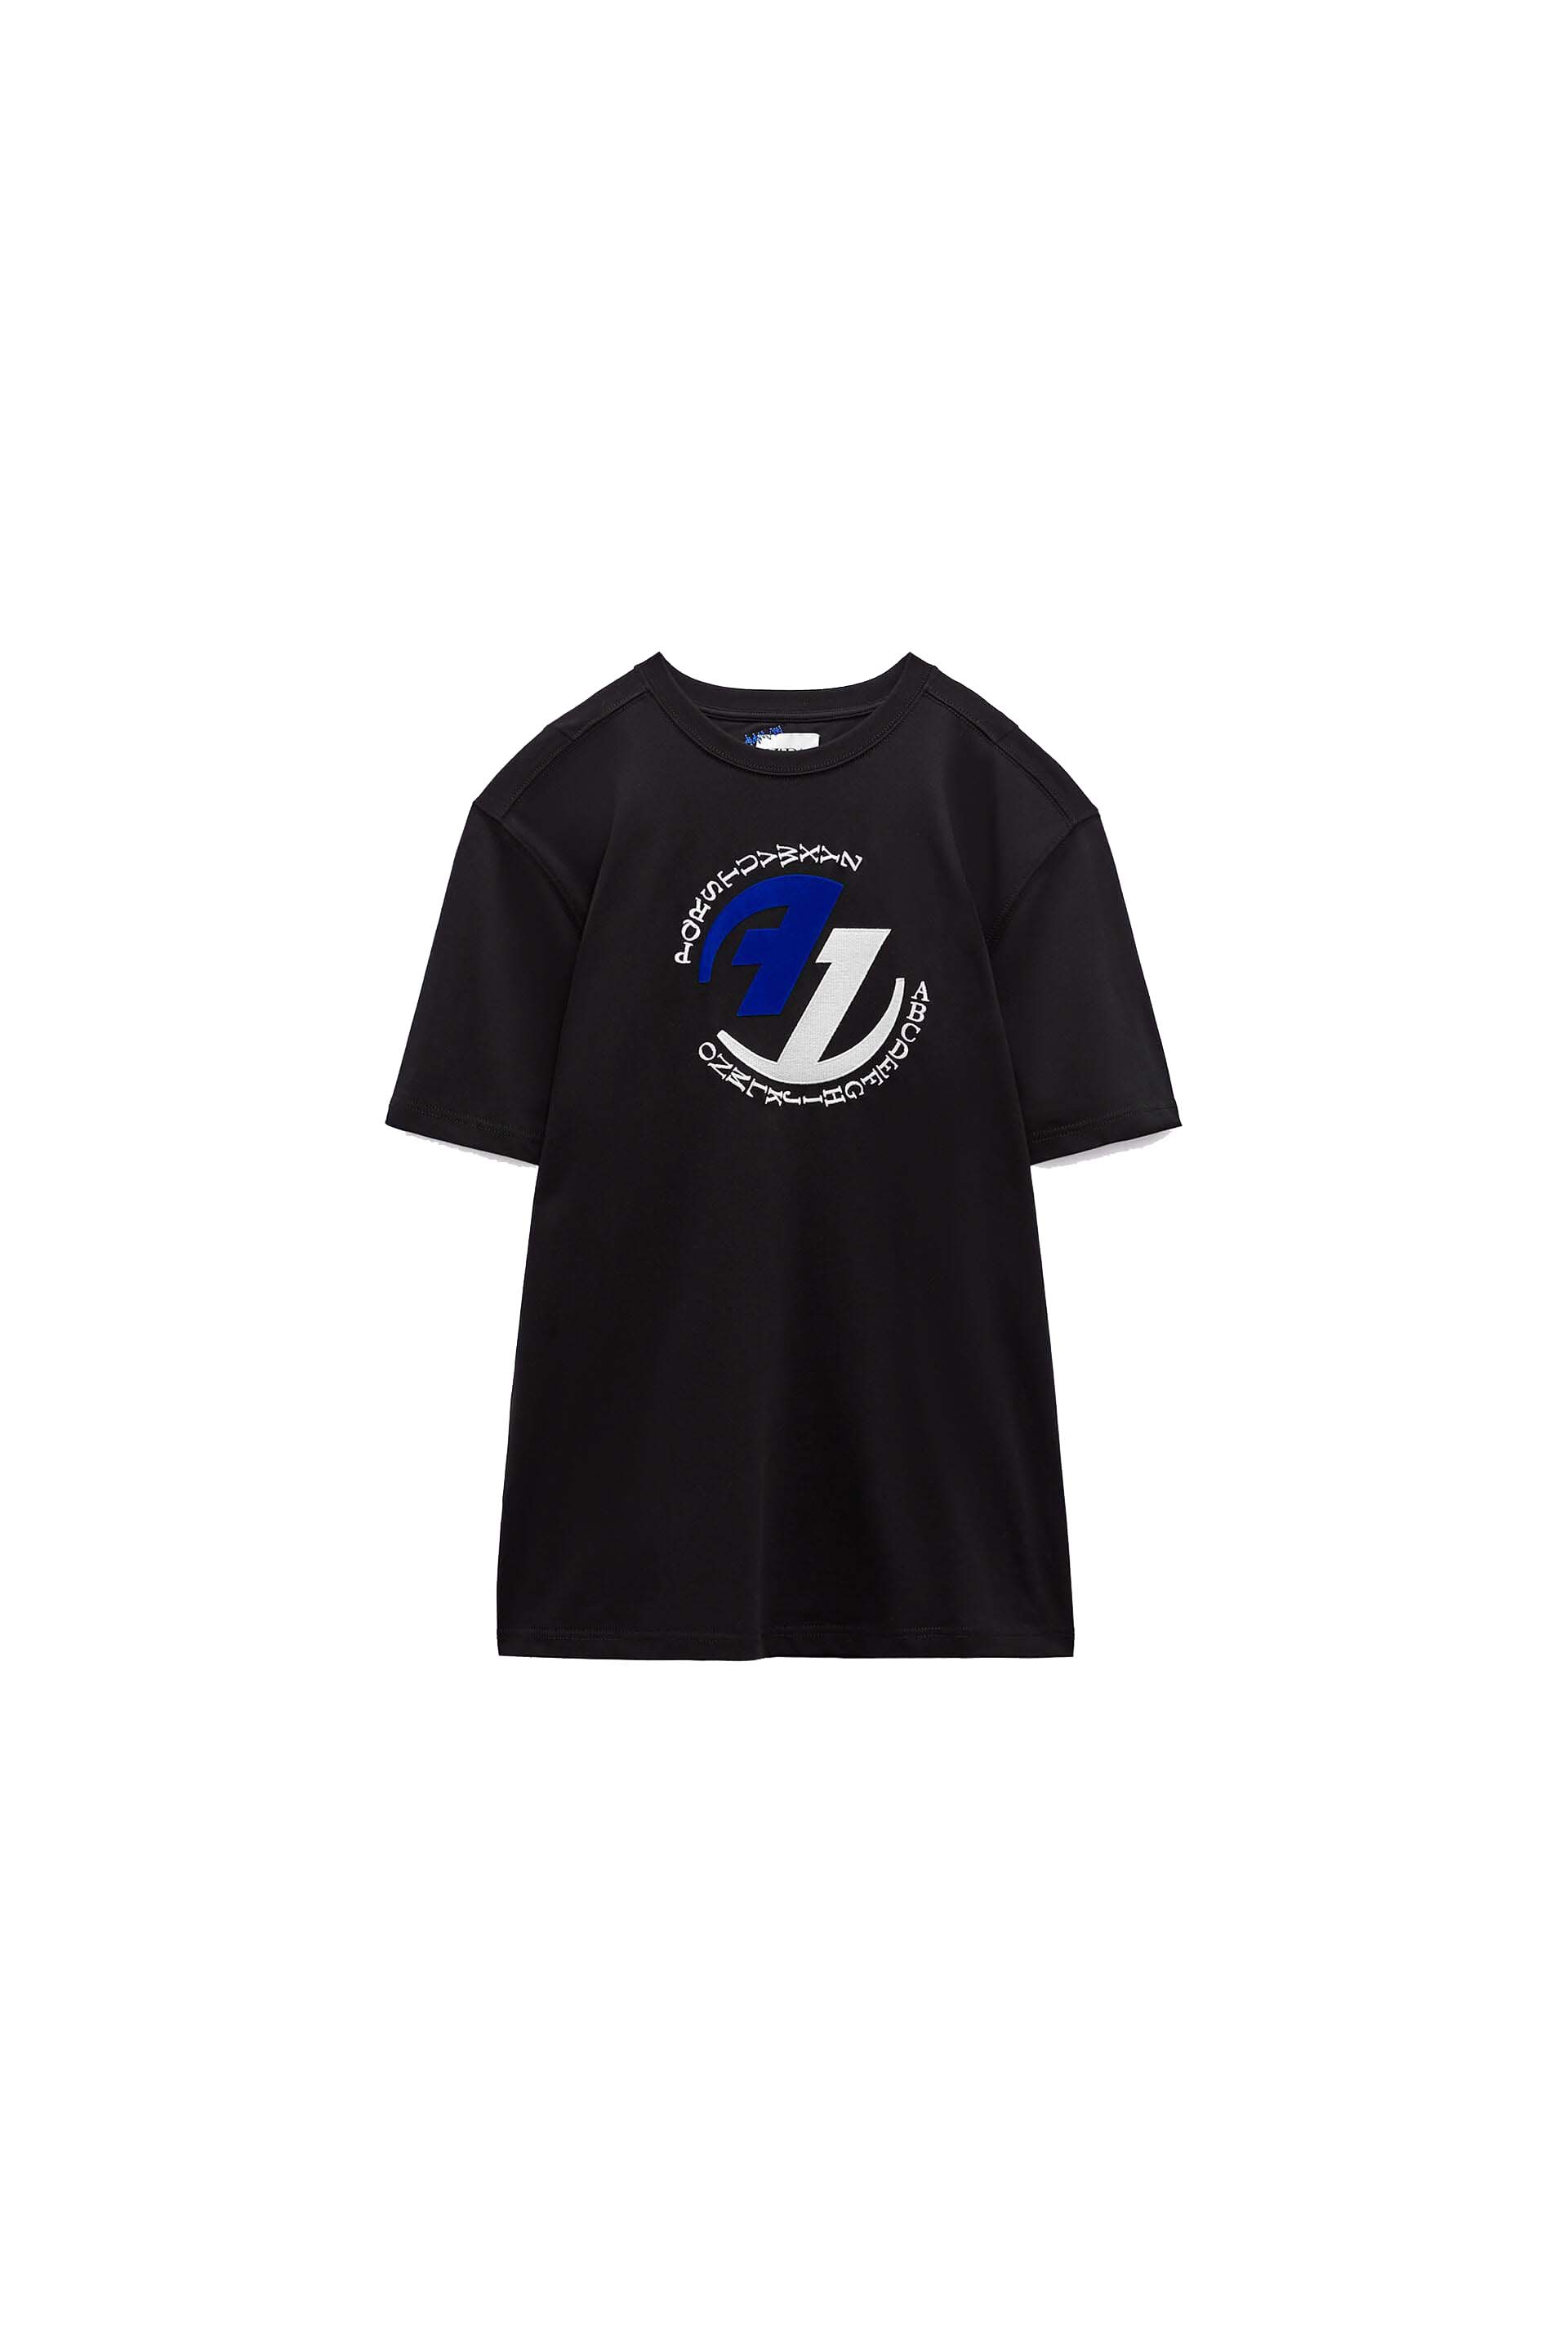 ADER error x Zara Graphic T-shirt Black - FW22 - US